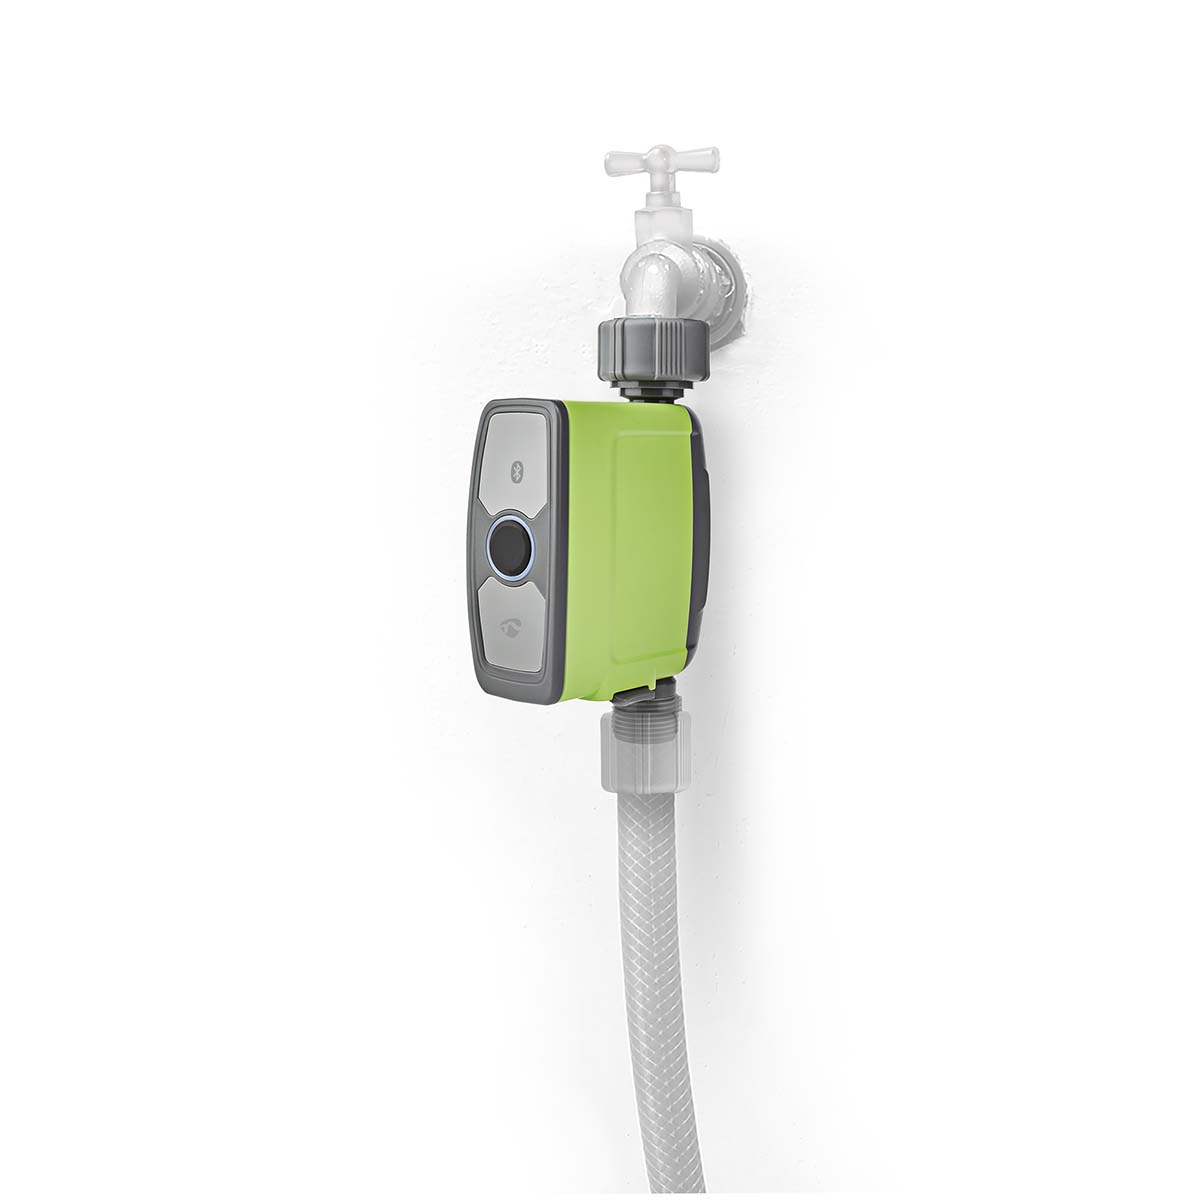 Nedis BTWV10GN SmartLife Intelligente Wassersteuerung Bluetooth® | Batteriebetrieben | IP54 | Max. Wasserdruck: 8